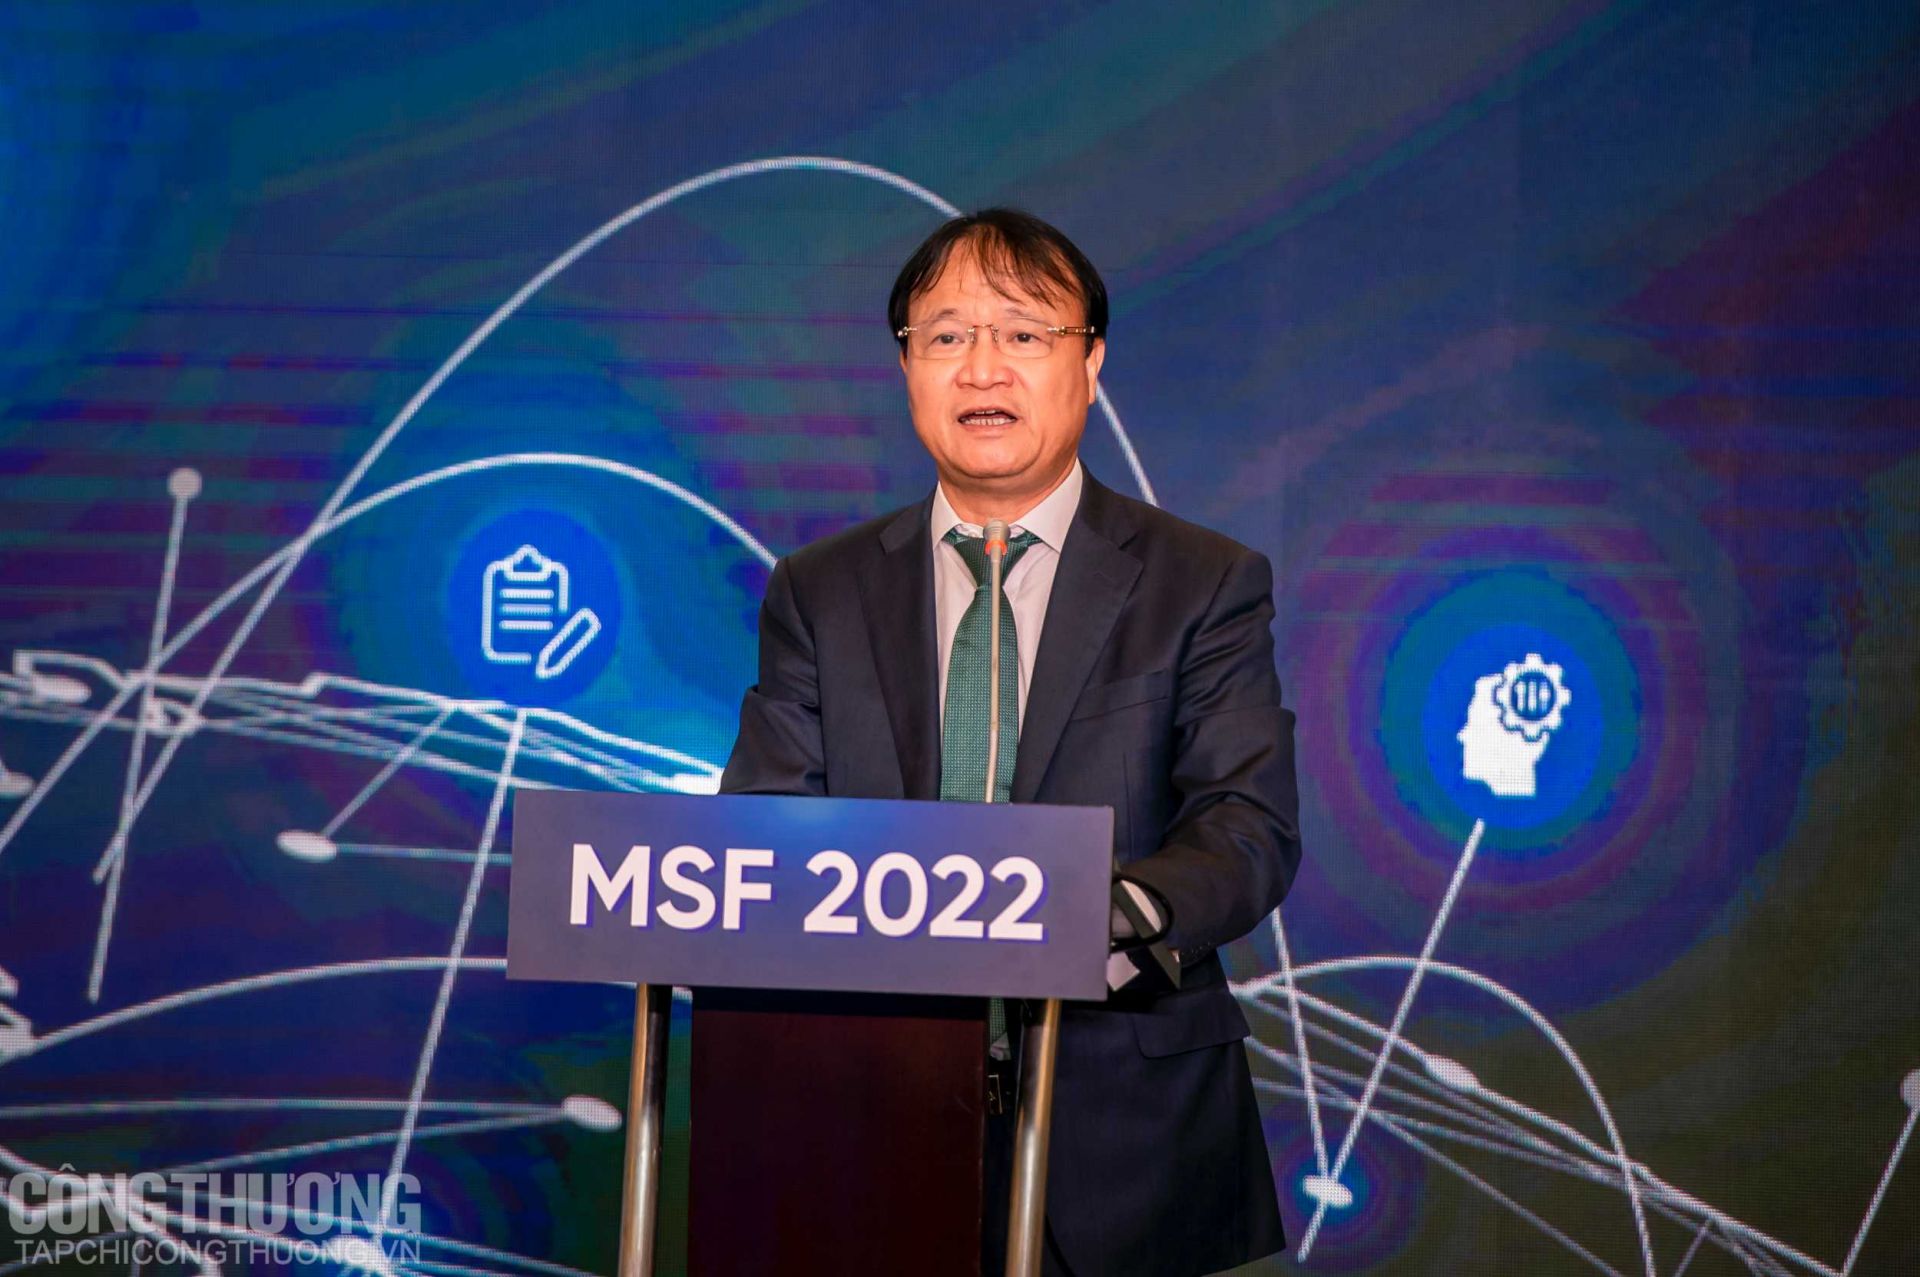 Thứ trưởng Bộ Công Thương Đỗ Thắng Hải phát biểu tại Diễn đàn đa phương (MSF) 2022 với chủ đề "Cải thiện vị thế trong chuỗi giá trị toàn cầu cho Việt Nam: Hợp tác đa phương trong nâng cao năng lực và Trách nhiệm tra soát”